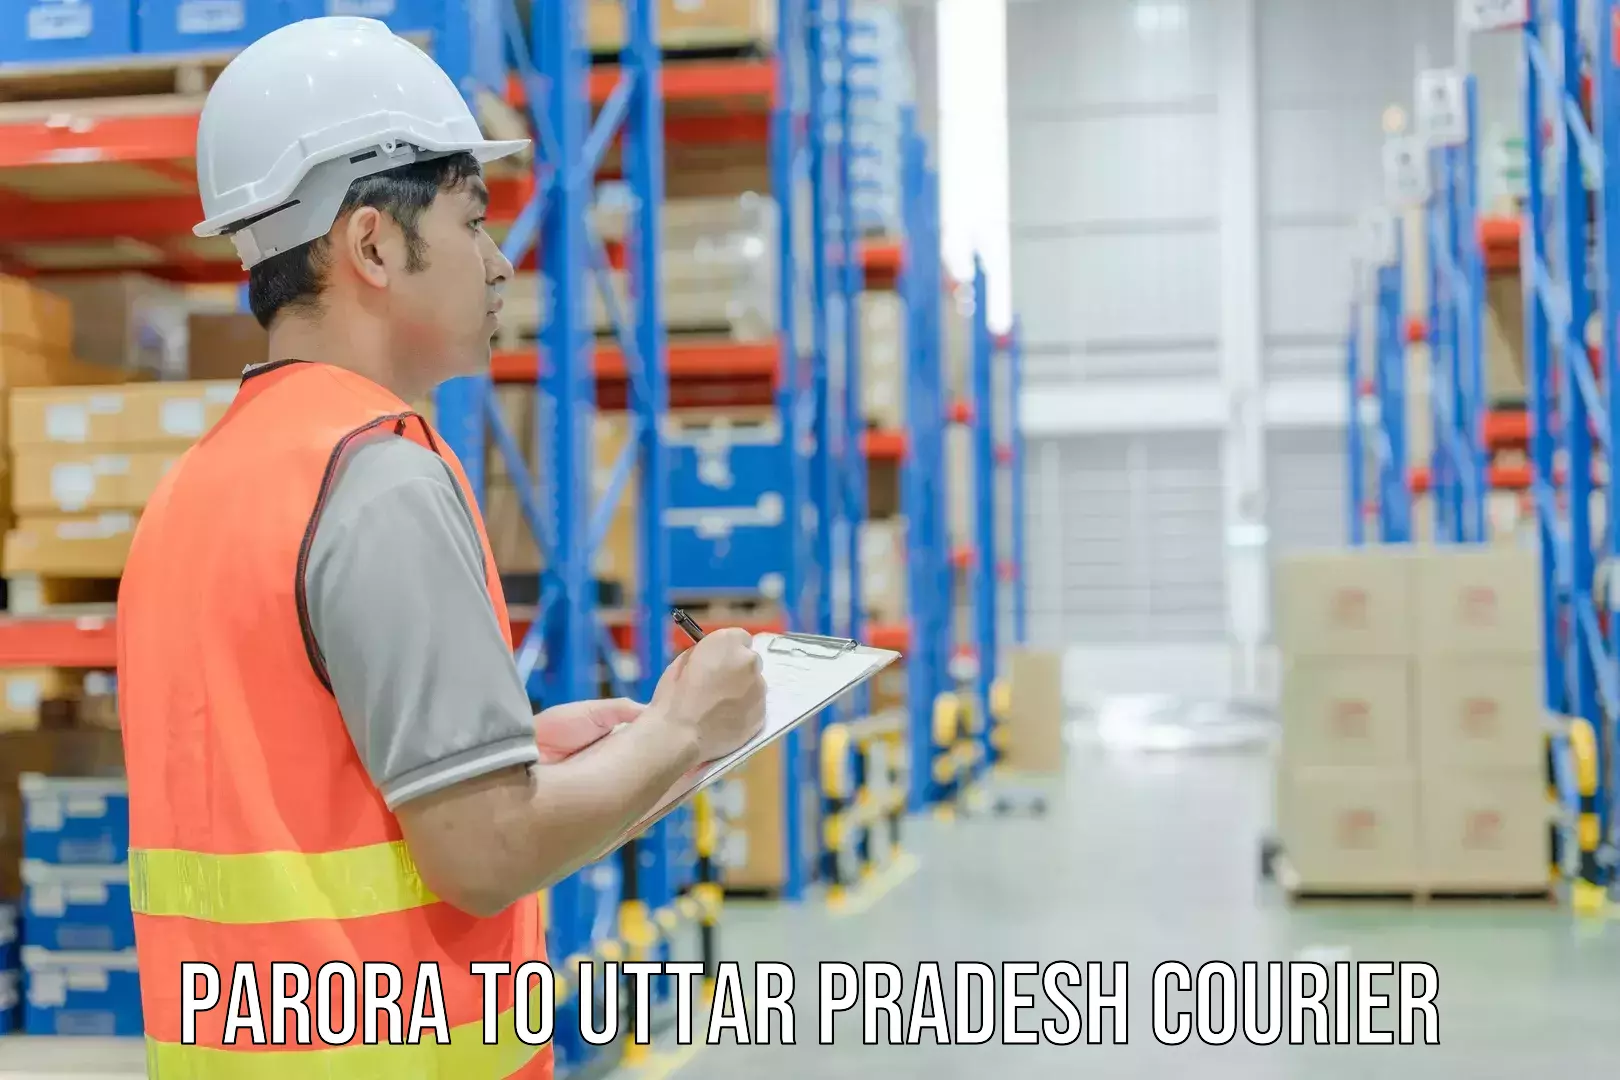 Courier service comparison Parora to Hamirpur Uttar Pradesh